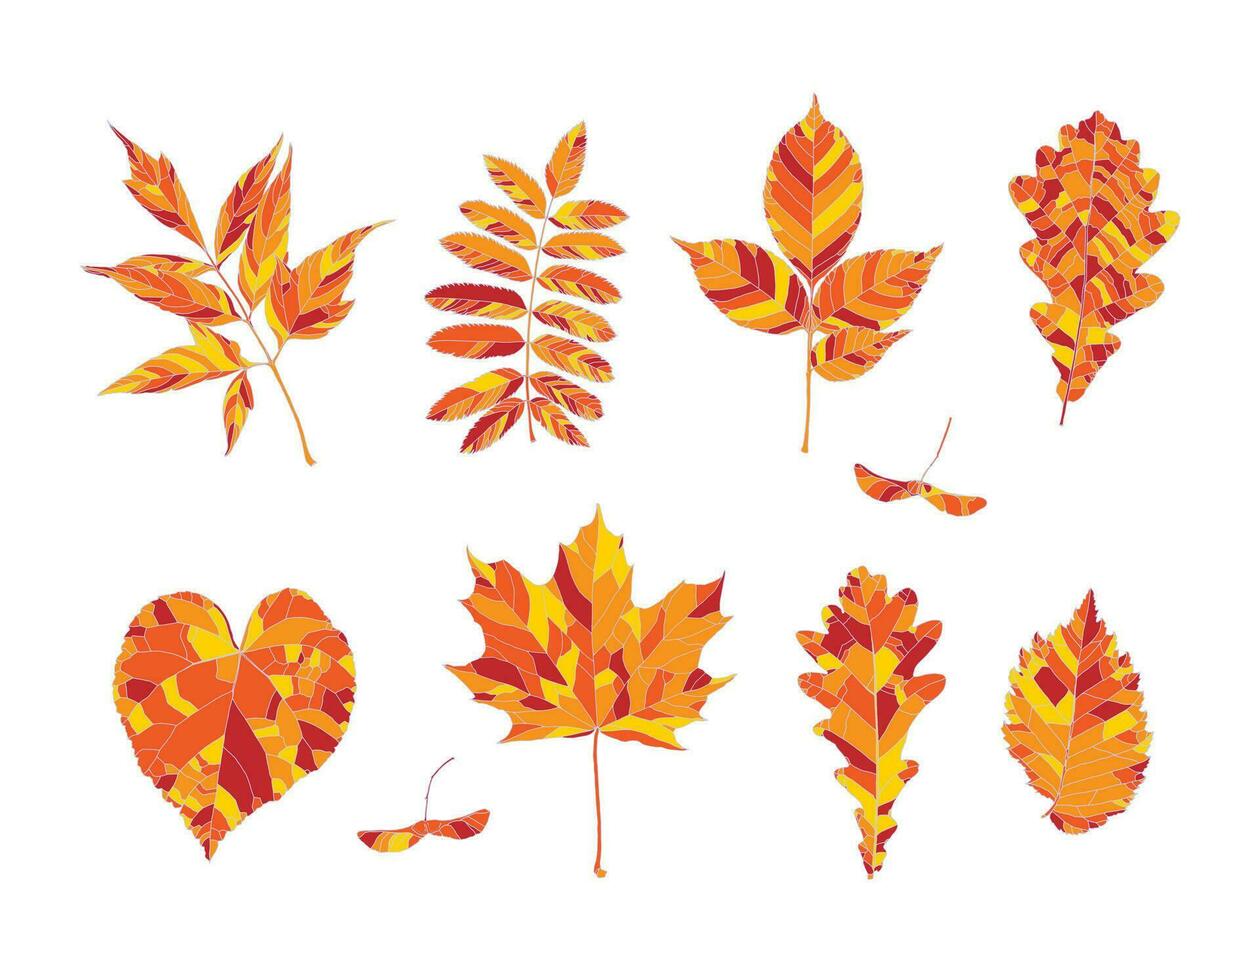 einstellen von Hand gezeichnet orange, rot und Gelb Herbst Blätter - - Ahorn, Ahorn Samen, Asche verlassen Ahorn, Eberesche, Asche, Eiche, Linde, Ulme, isoliert auf Weiß Hintergrund. vektor